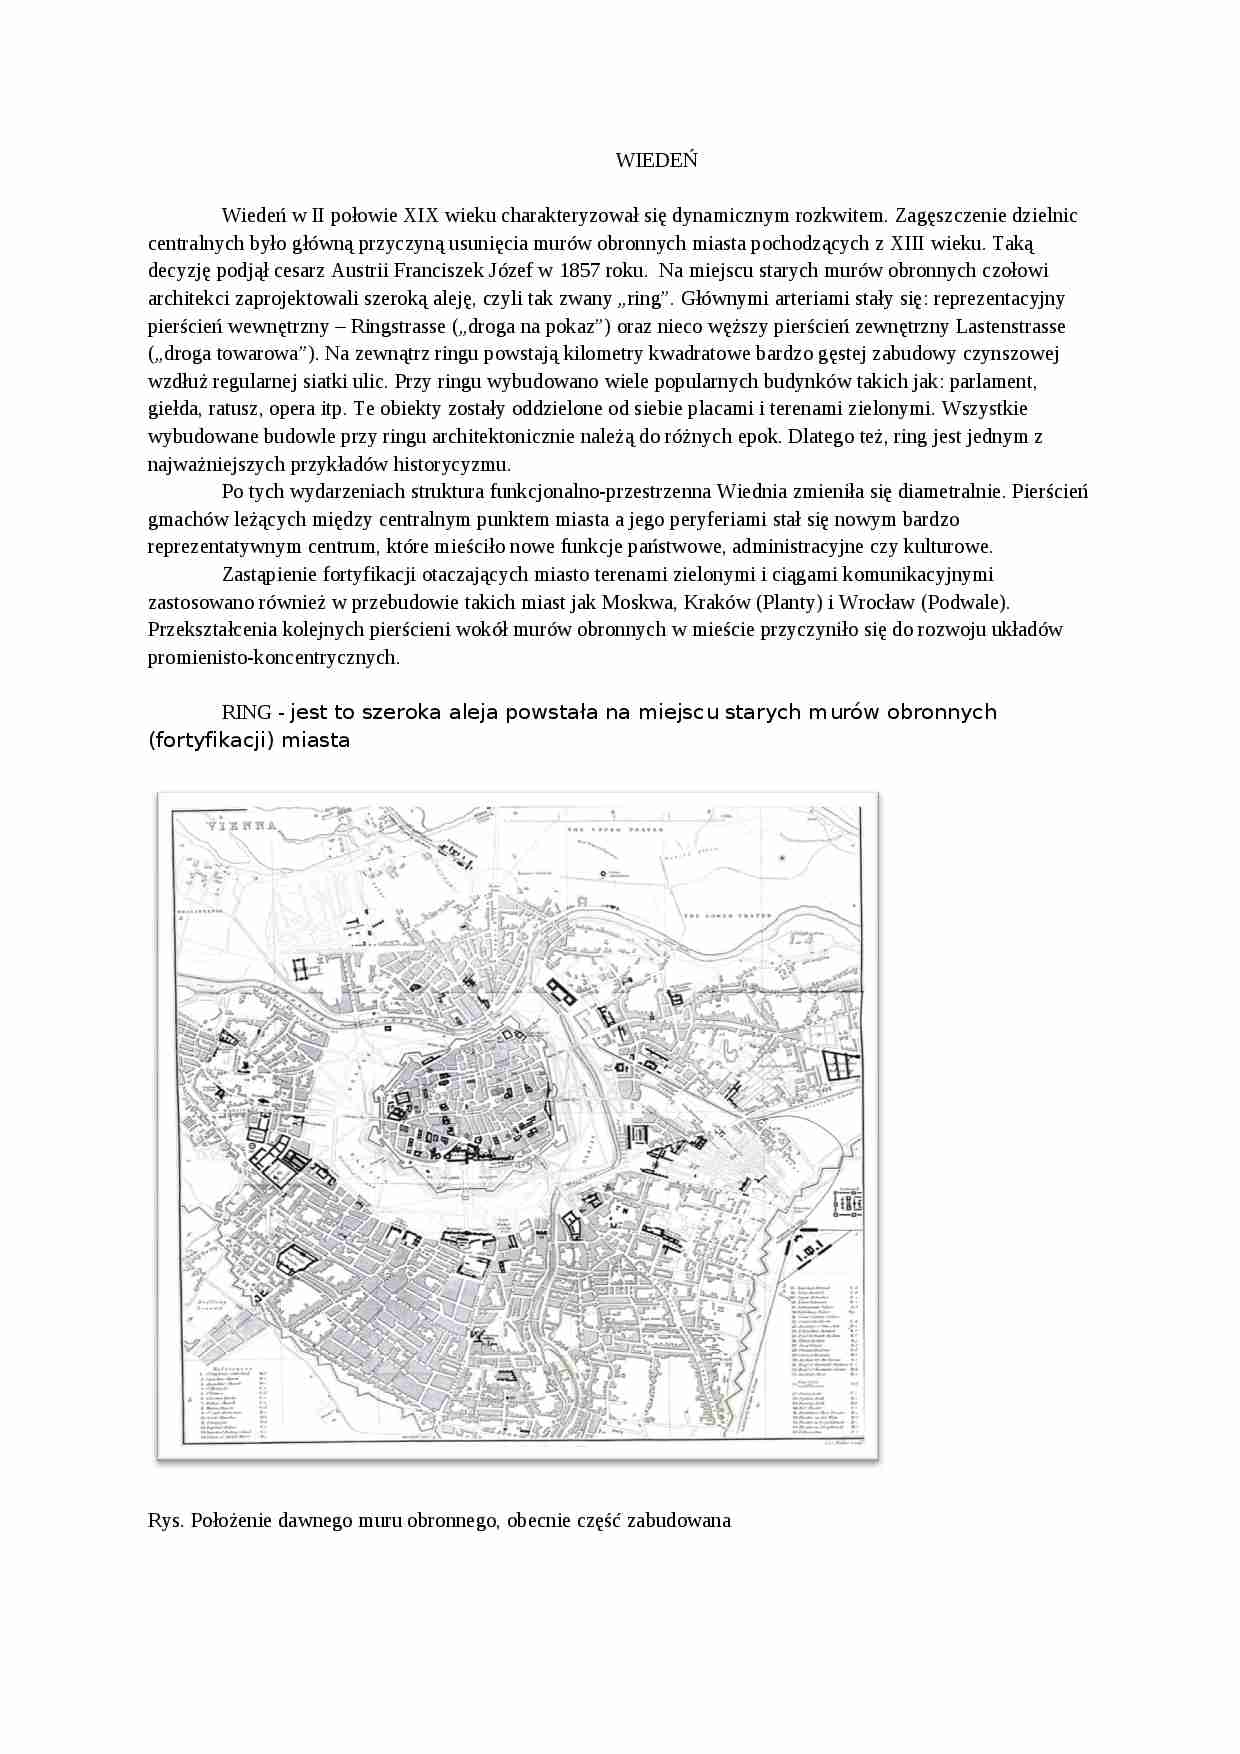 Wiedeń-historia budowy miast - strona 1